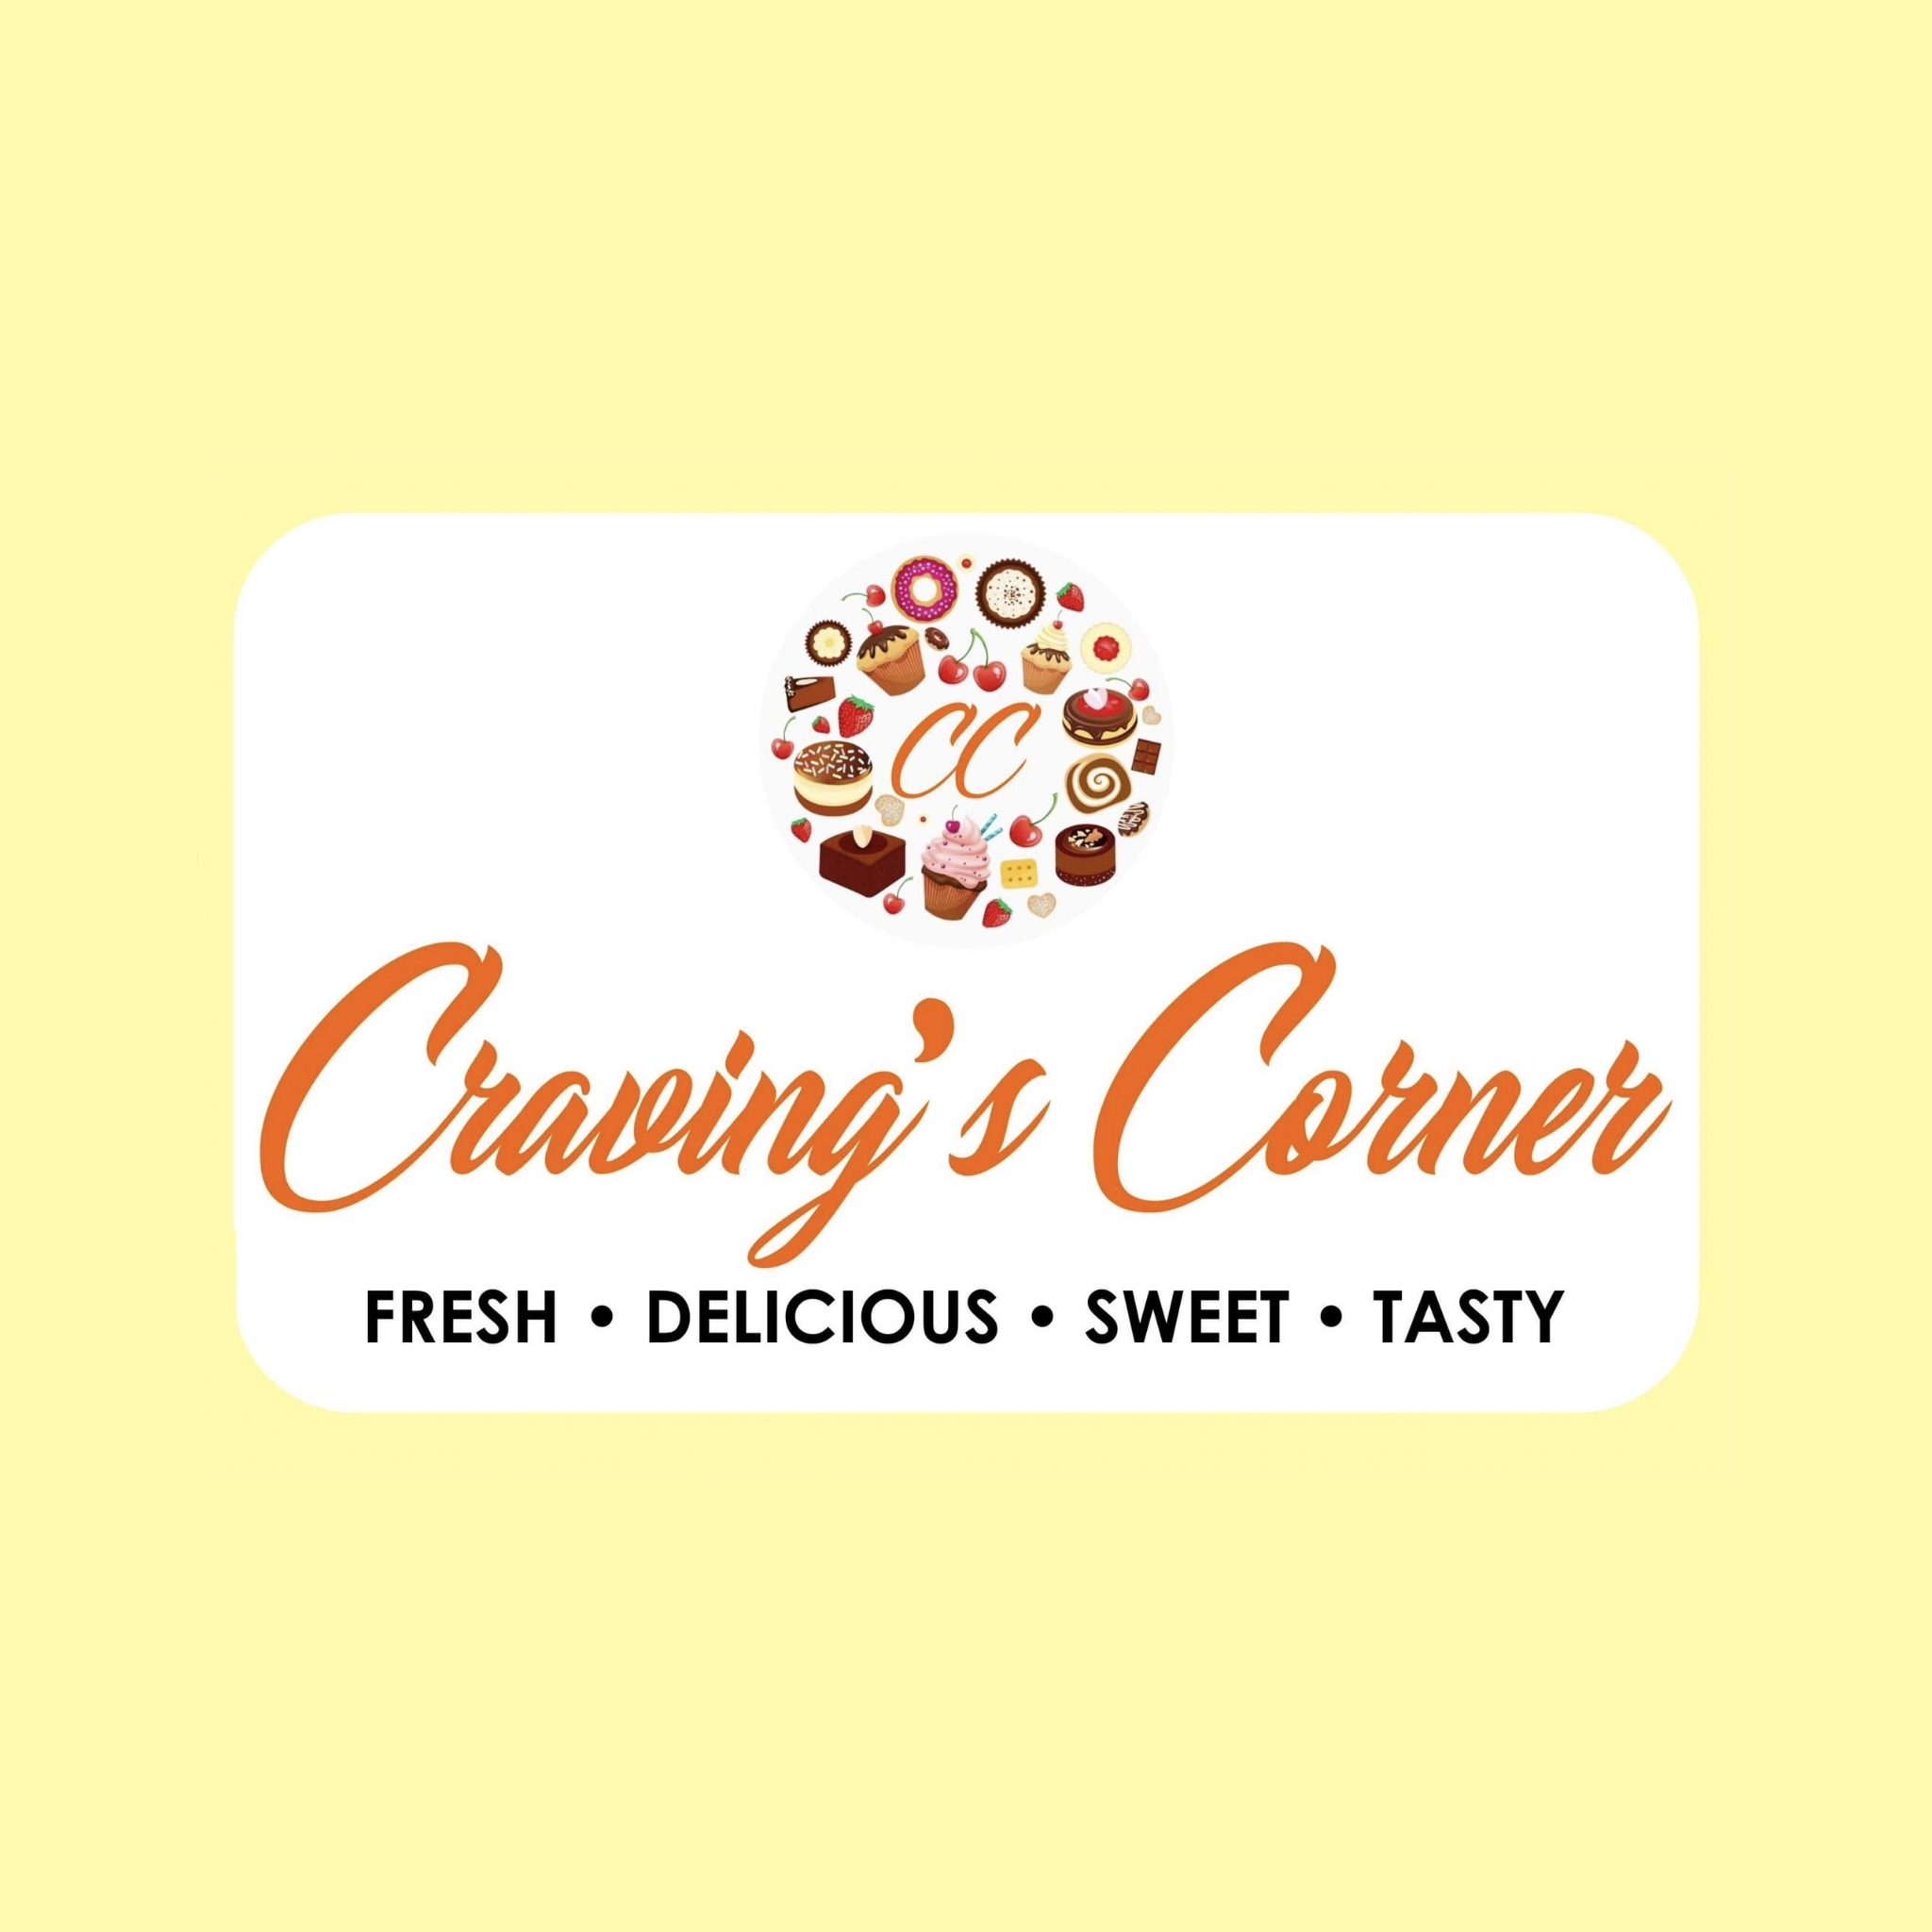 Craving's Corner job hiring image